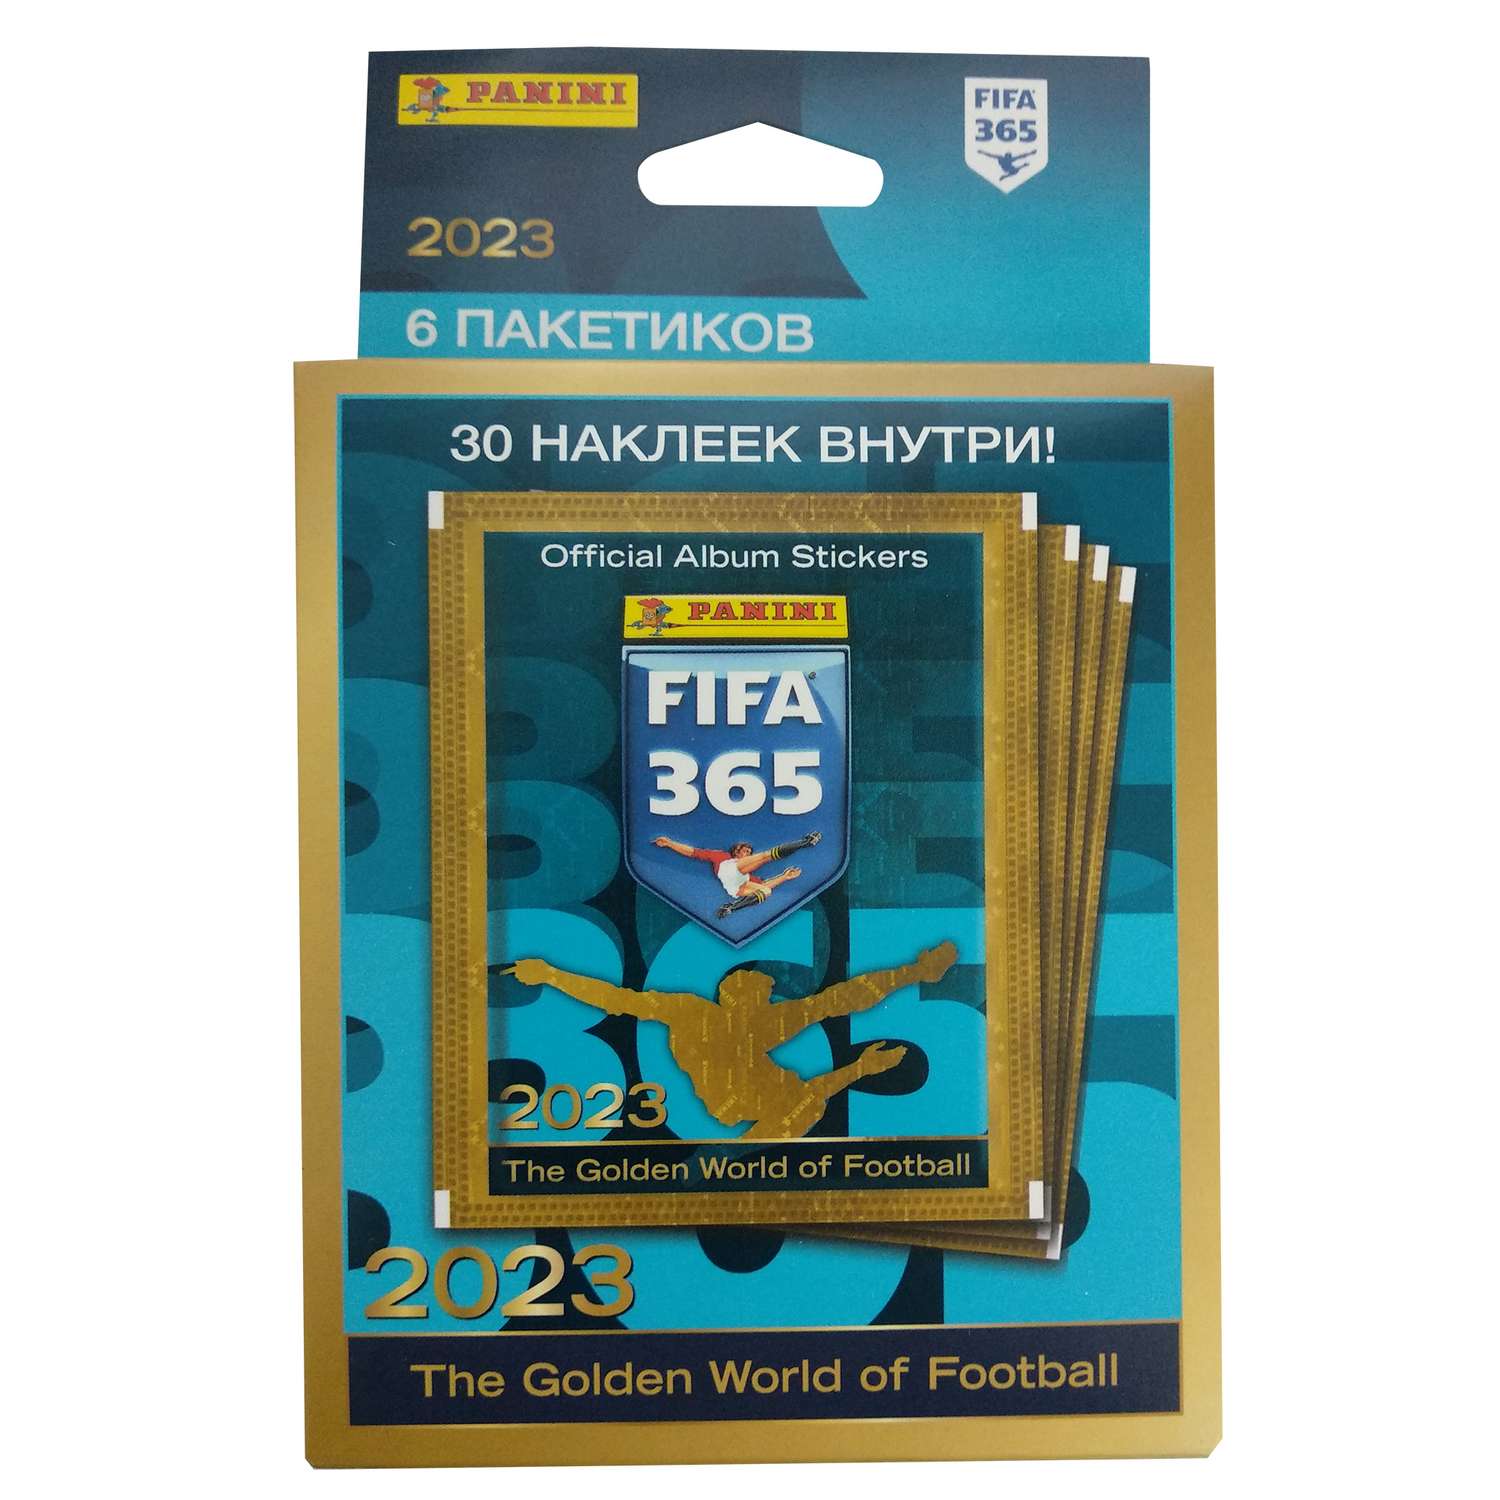 Наклейки коллекционные Panini FIFA 365 2023 6 пакетиков в экоблистере - фото 1